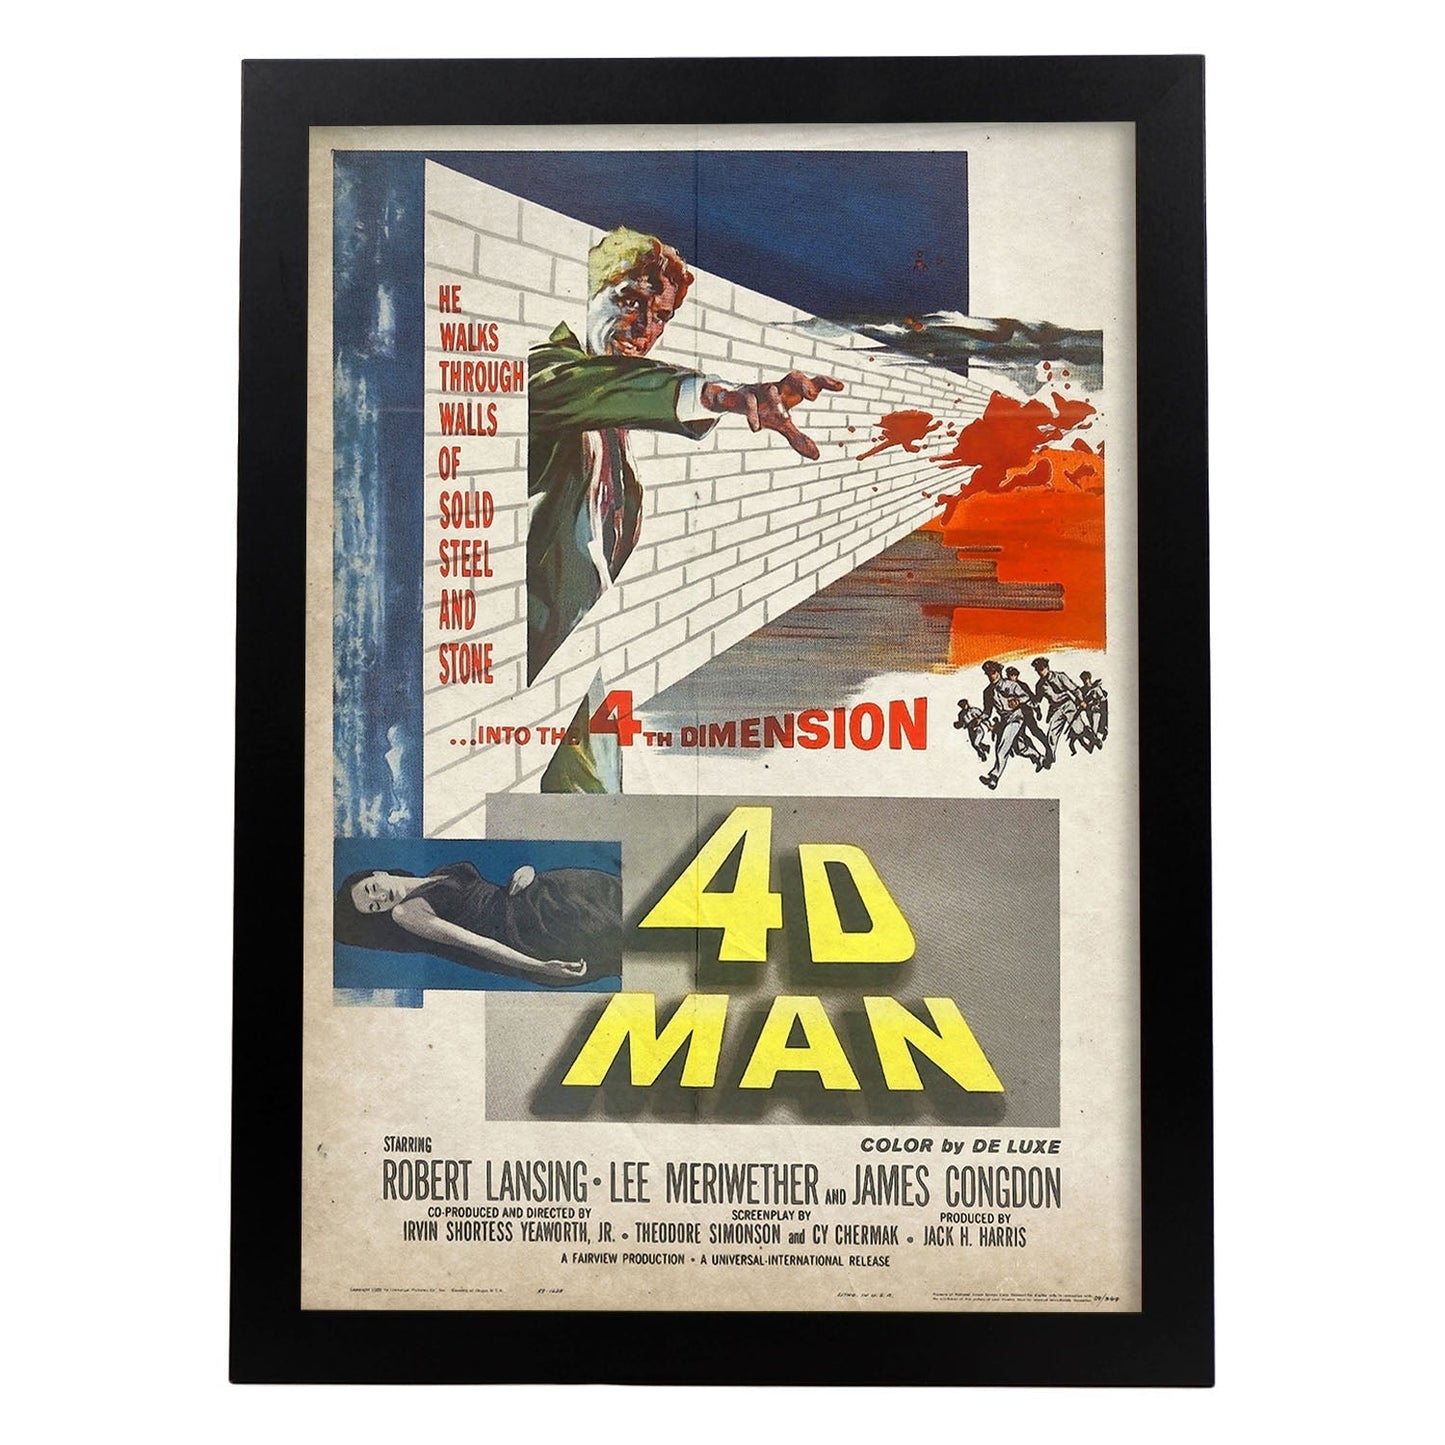 Poster vintage de 4D man. con imágenes vintage y de publicidad antigua.-Artwork-Nacnic-A4-Marco Negro-Nacnic Estudio SL